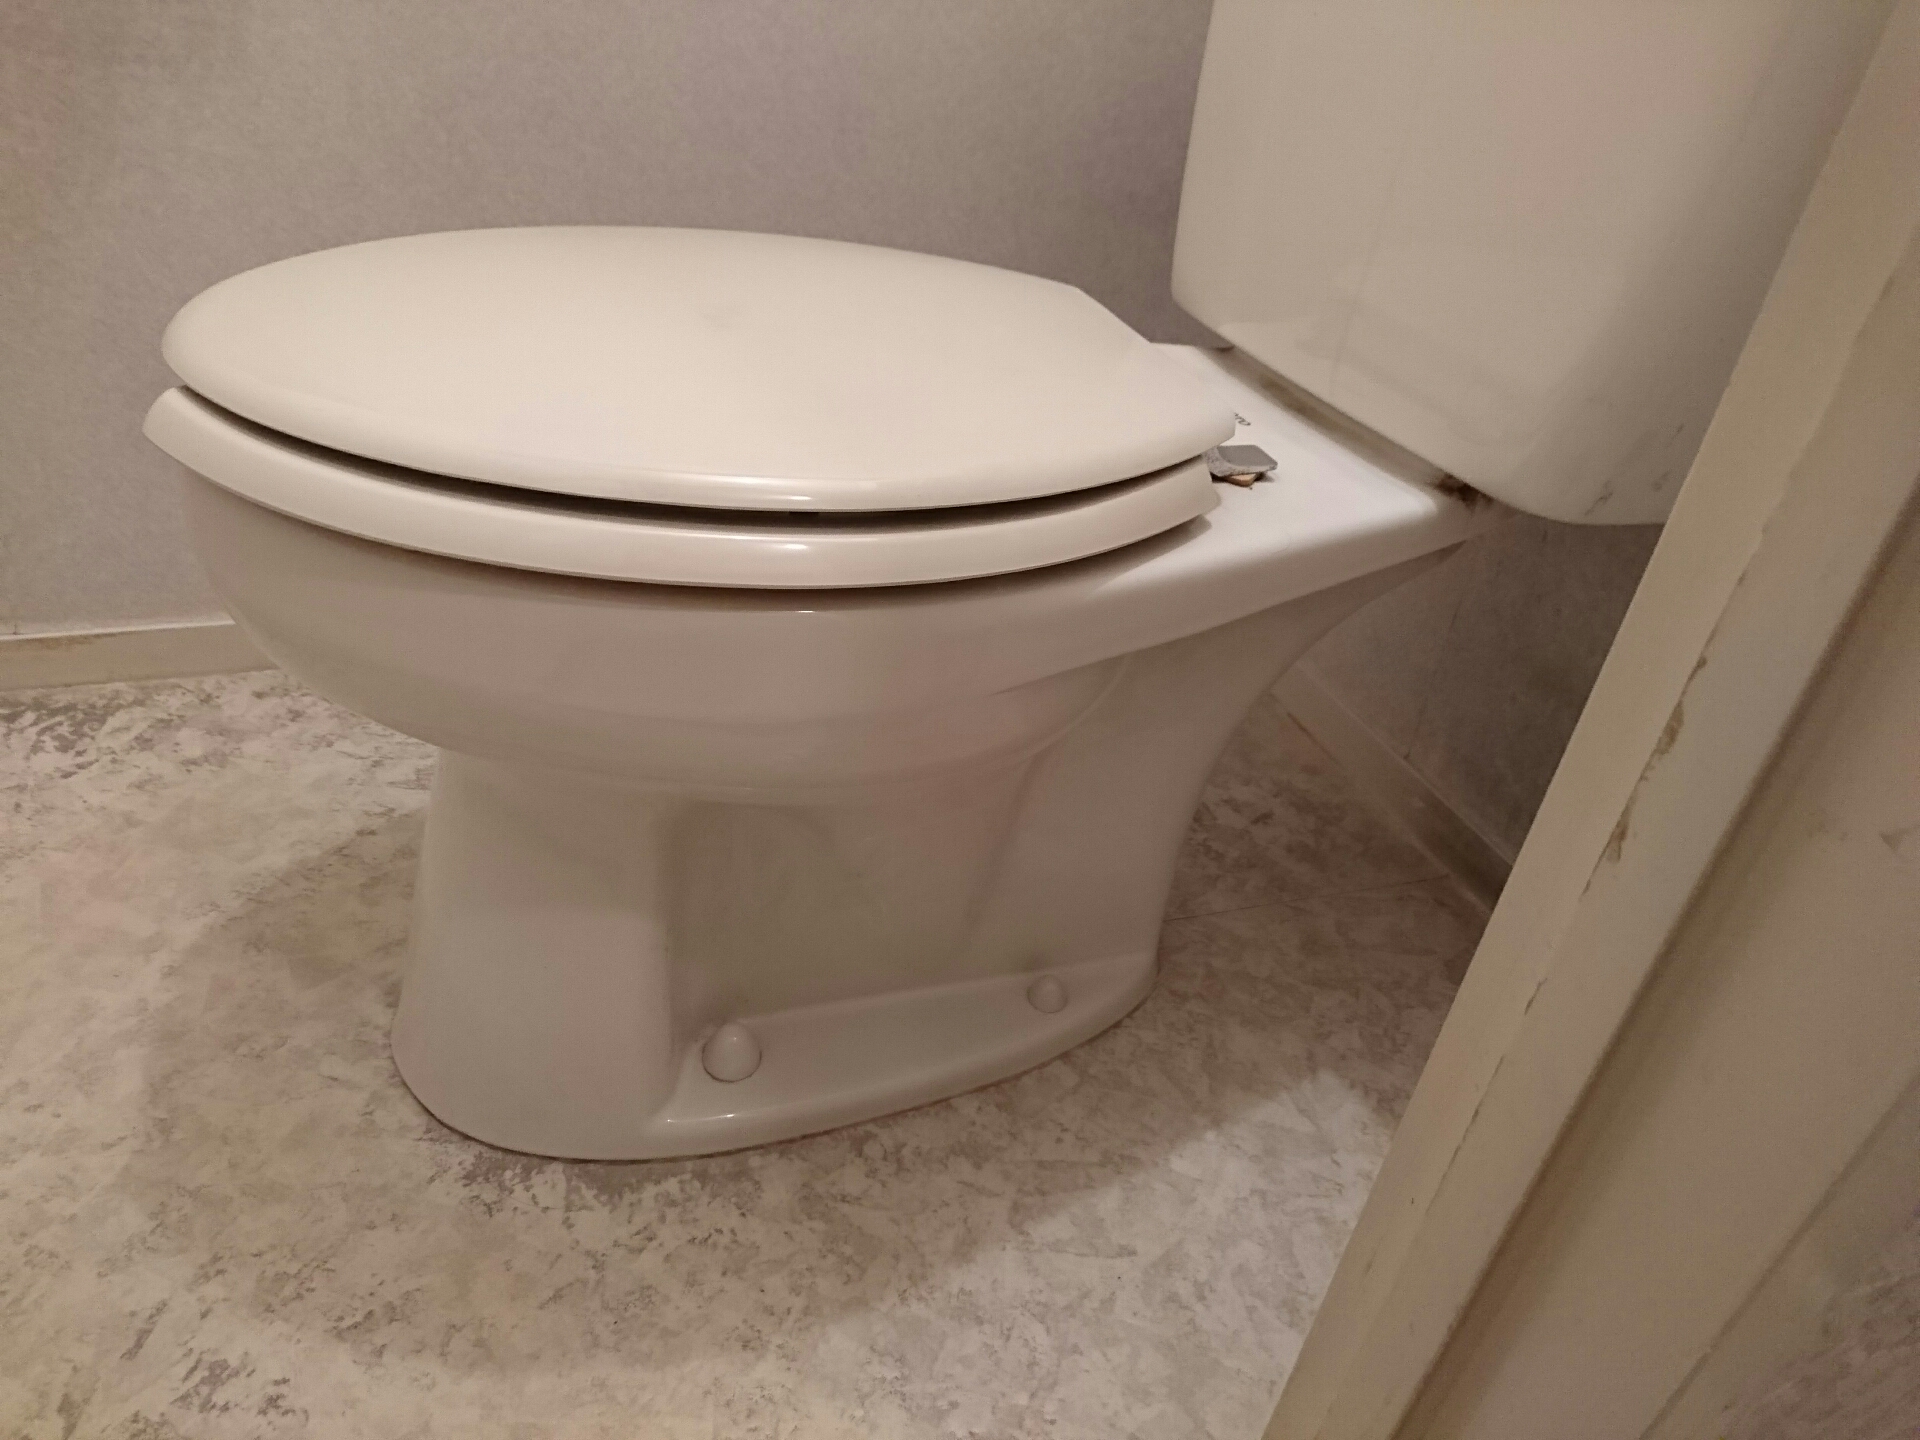 タンク式トイレの違い Toto ピュアレストqr シーン ホーム ファクトリー リフォーム日記 0